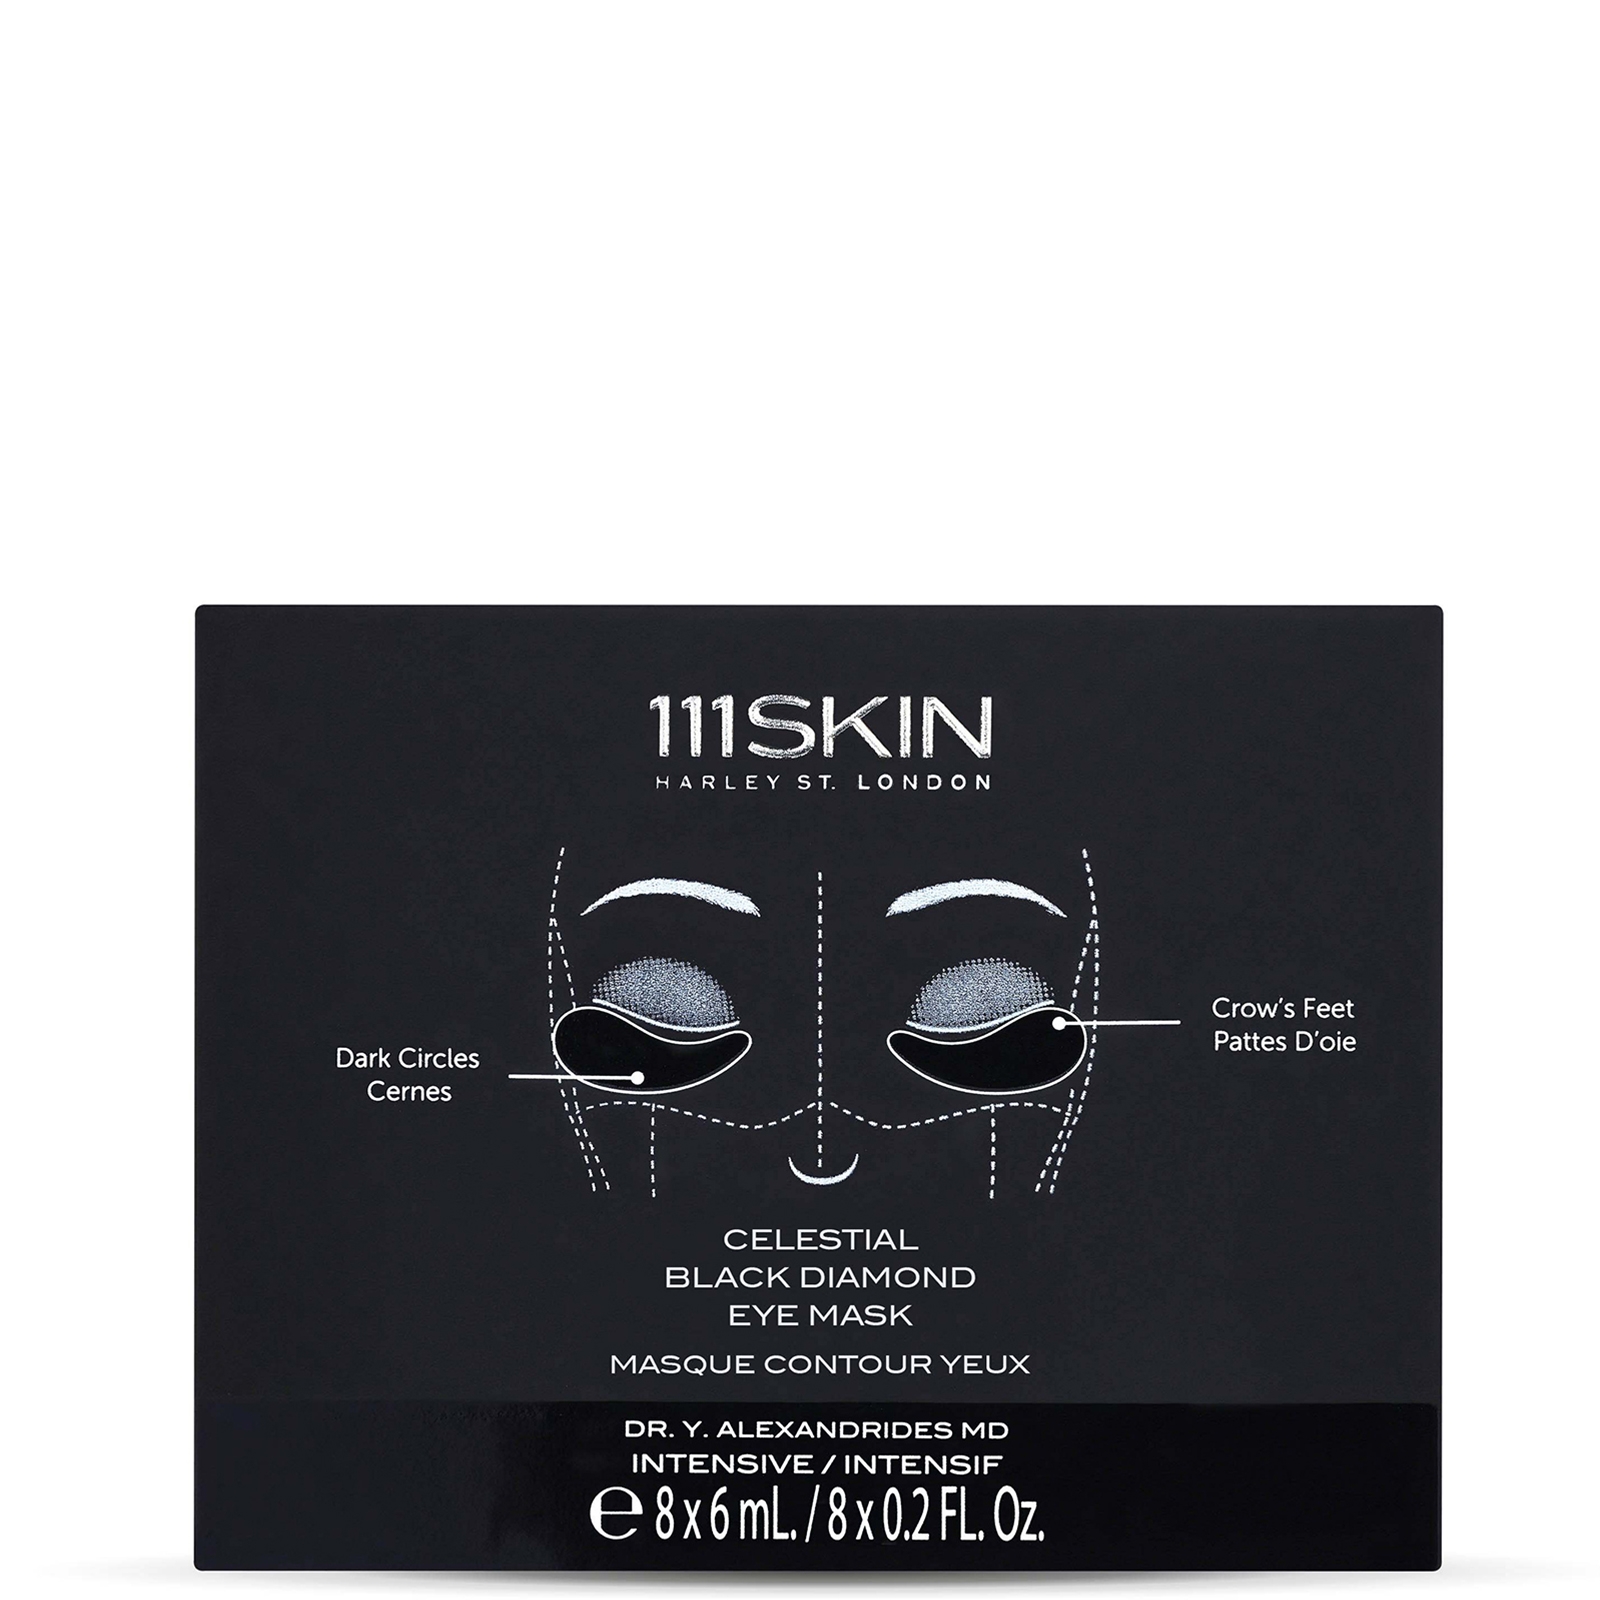 111SKIN Celestial Black Diamond Eye Mask (Various Options) - Box 48ml